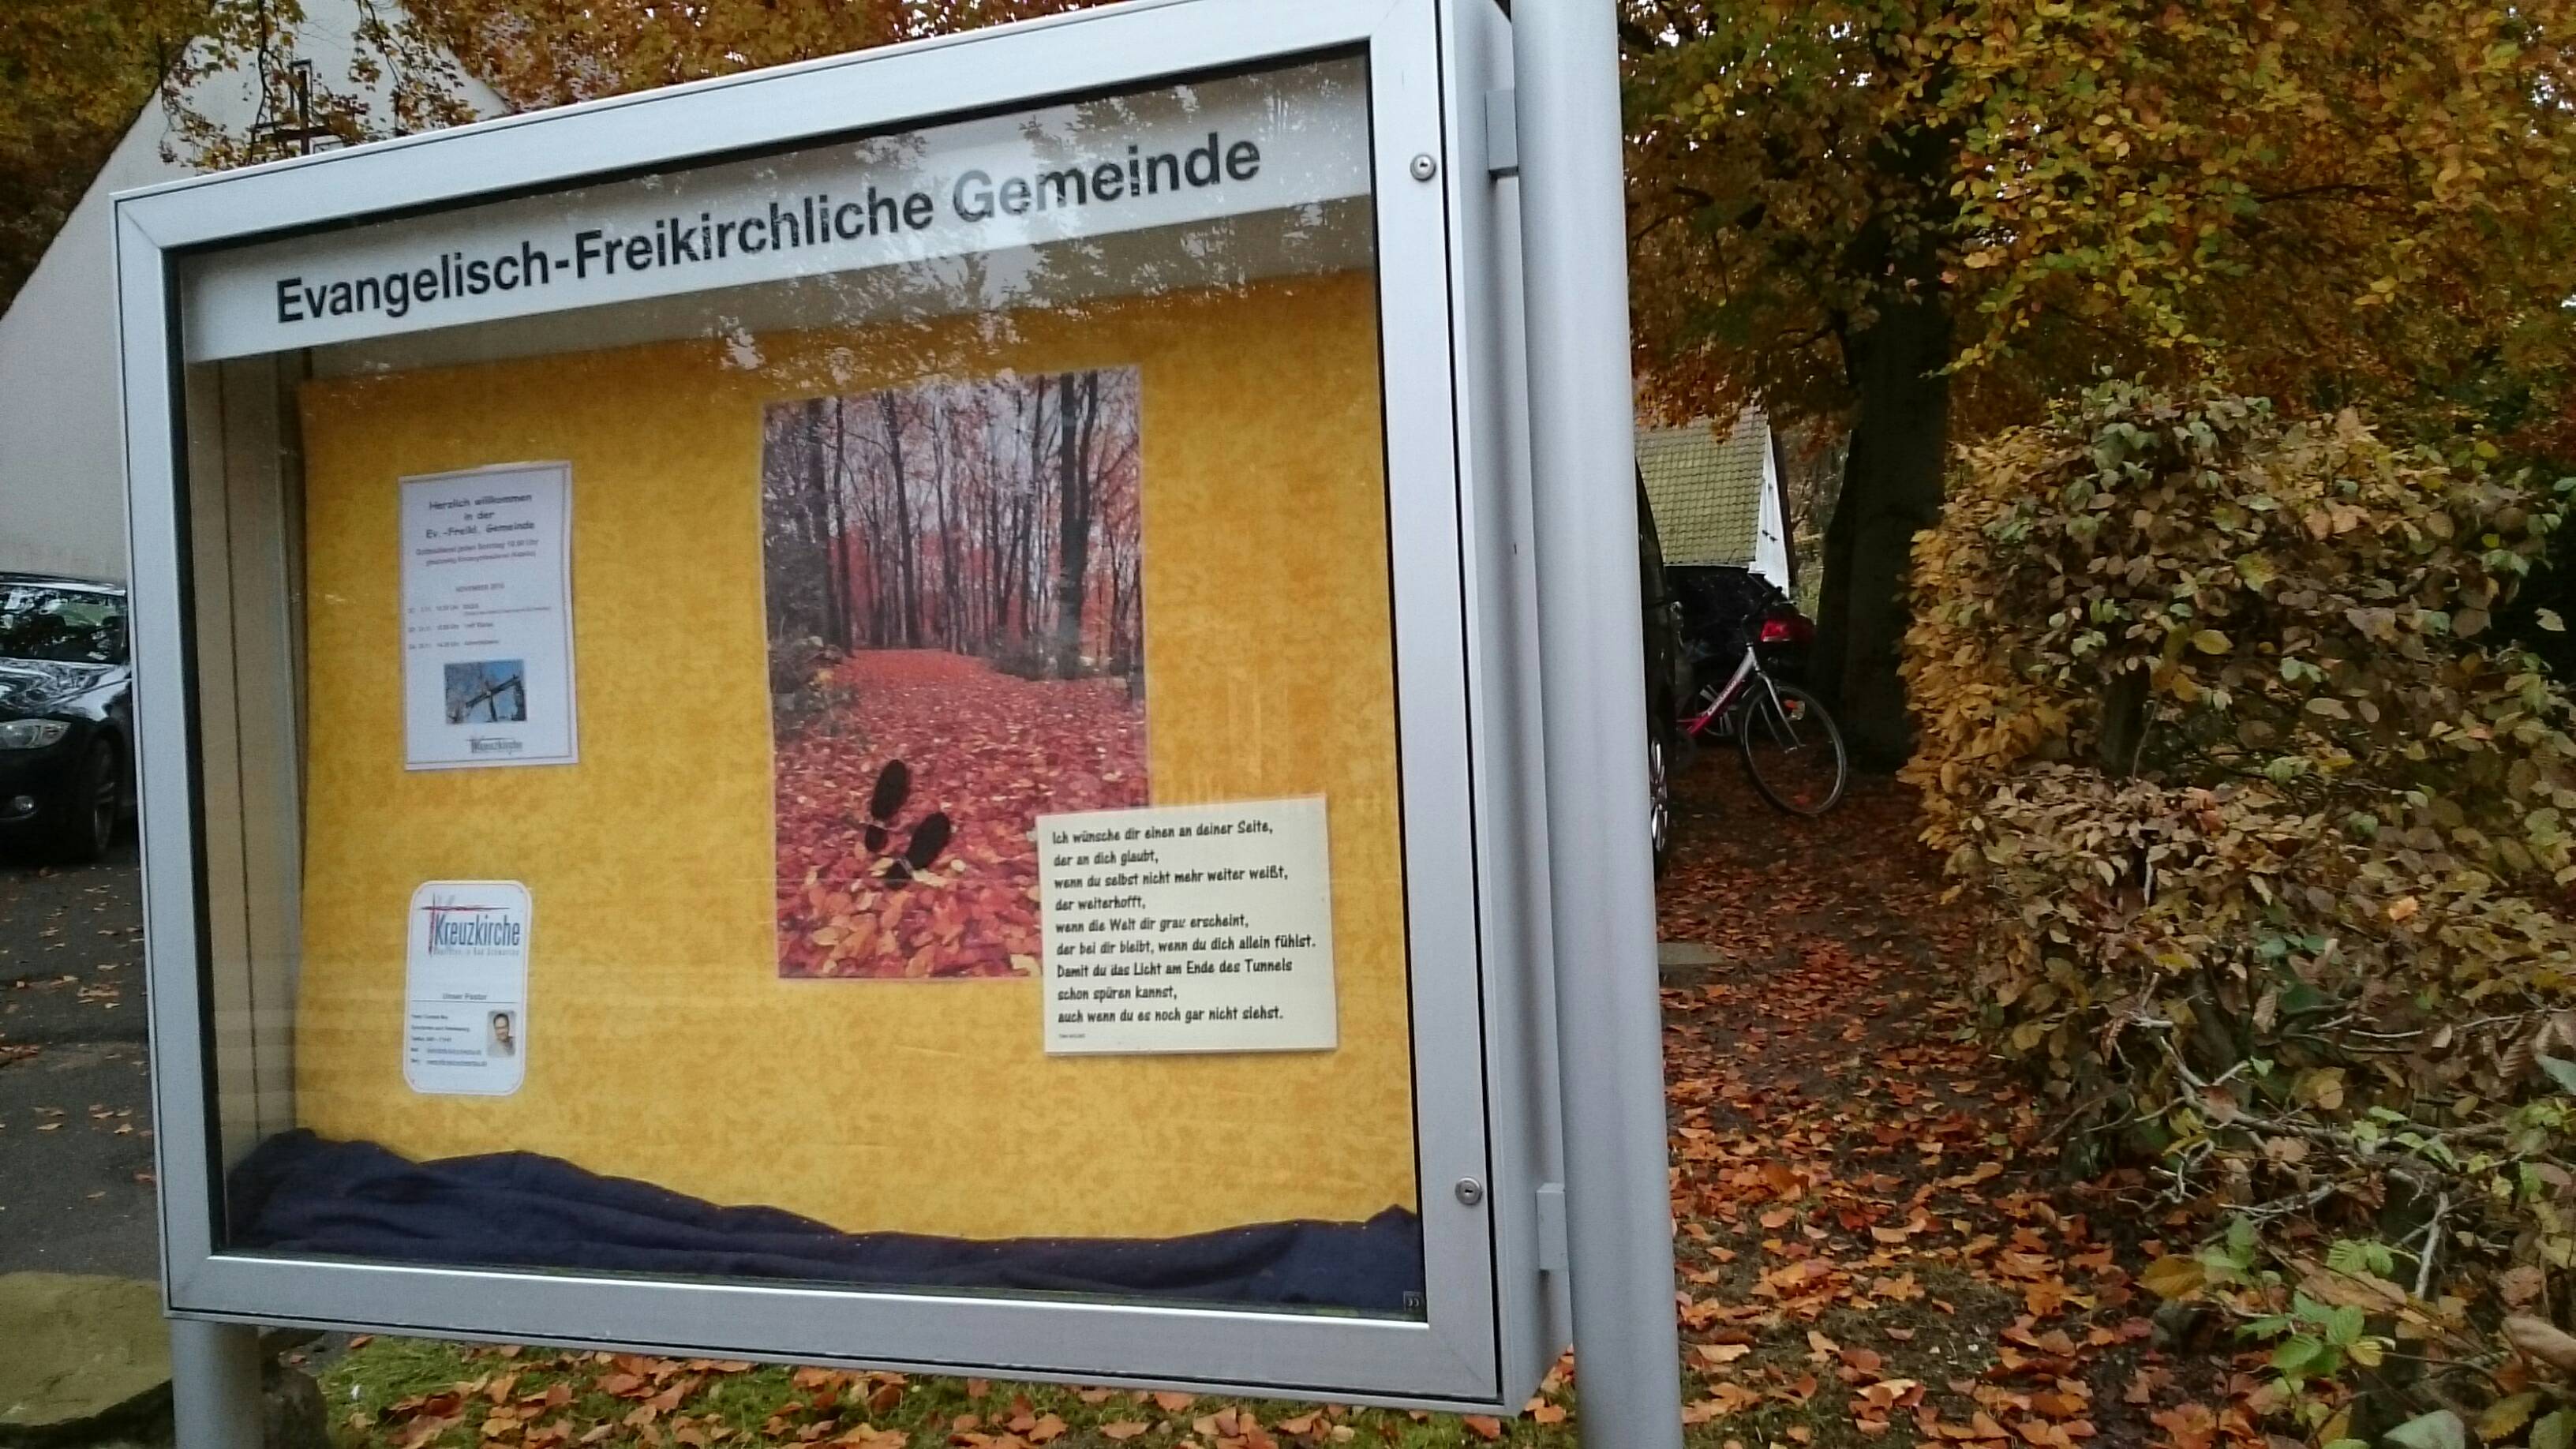 Bild 2 Ev.-Freikirchliche Gemeinde, Bad Schwartau in Bad Schwartau